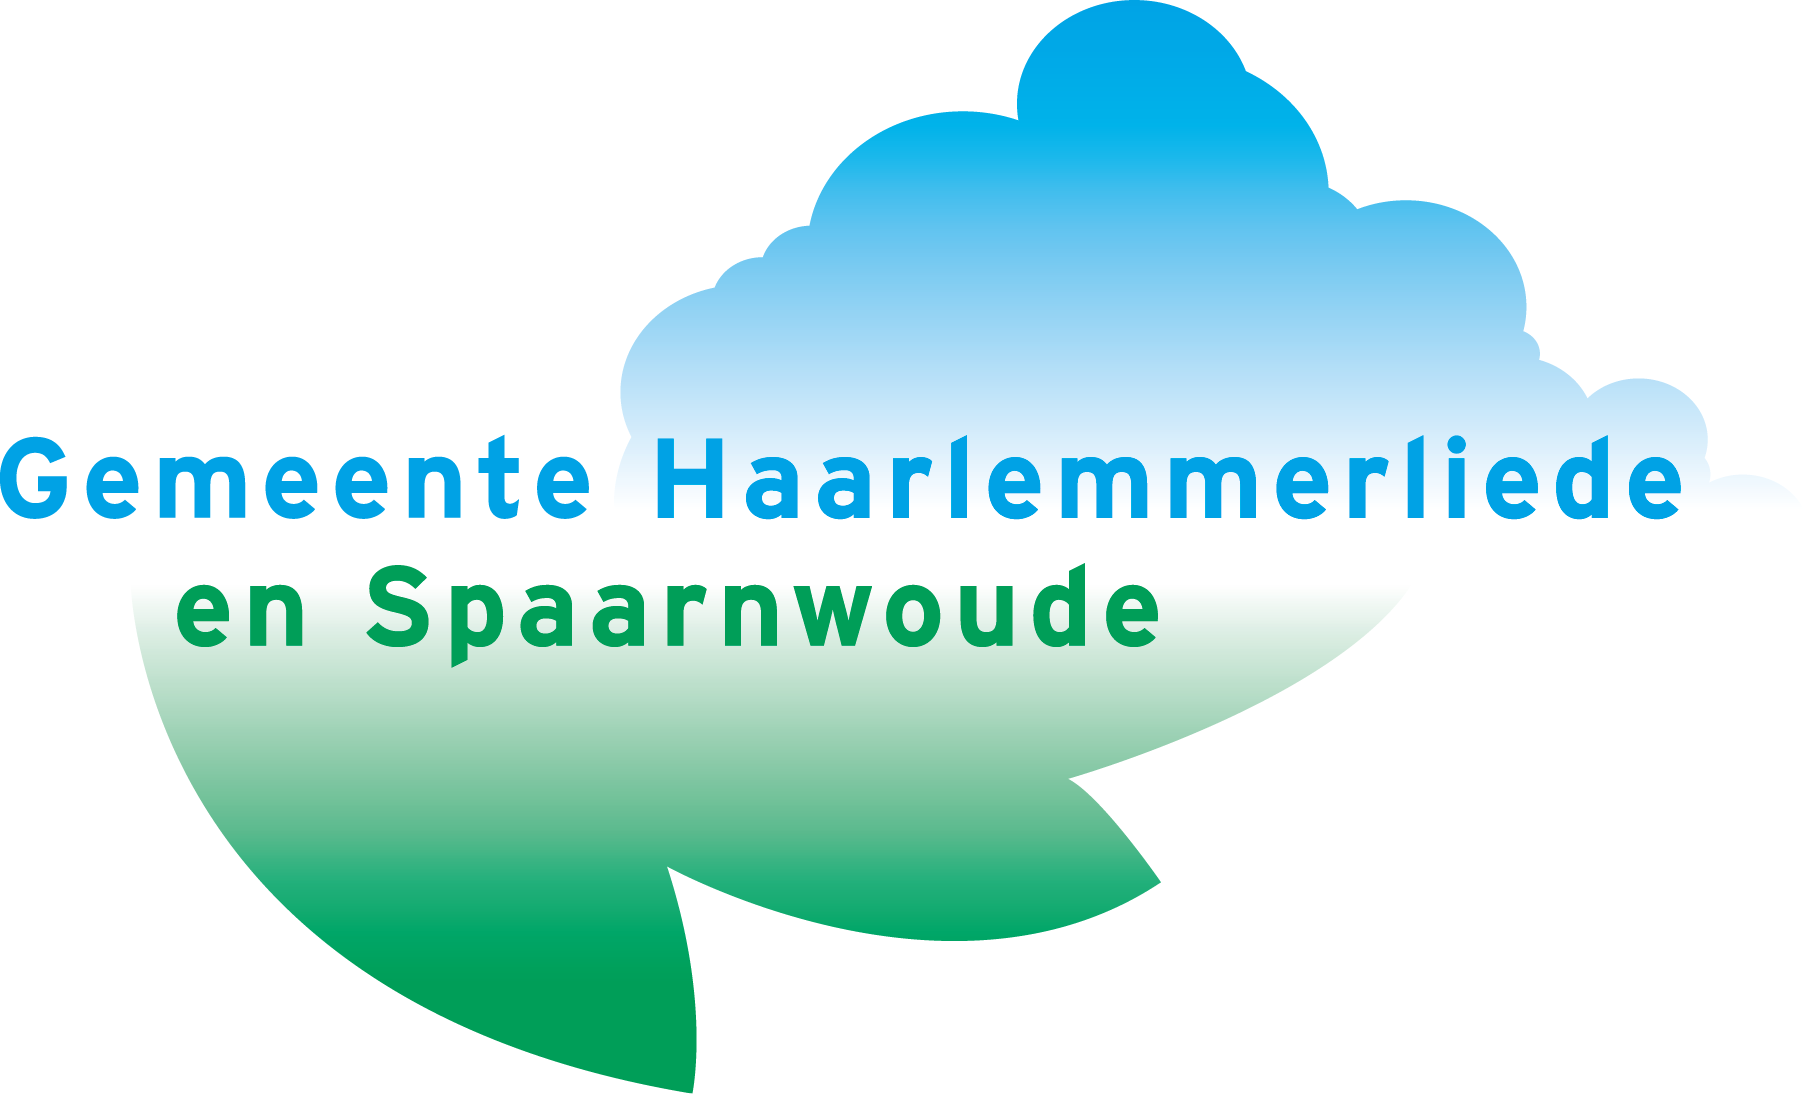 Op 21 januari is door het college van burgemeester en wethouders van de gemeente Haarlemmerliede en Spaarnwoude de navolgende